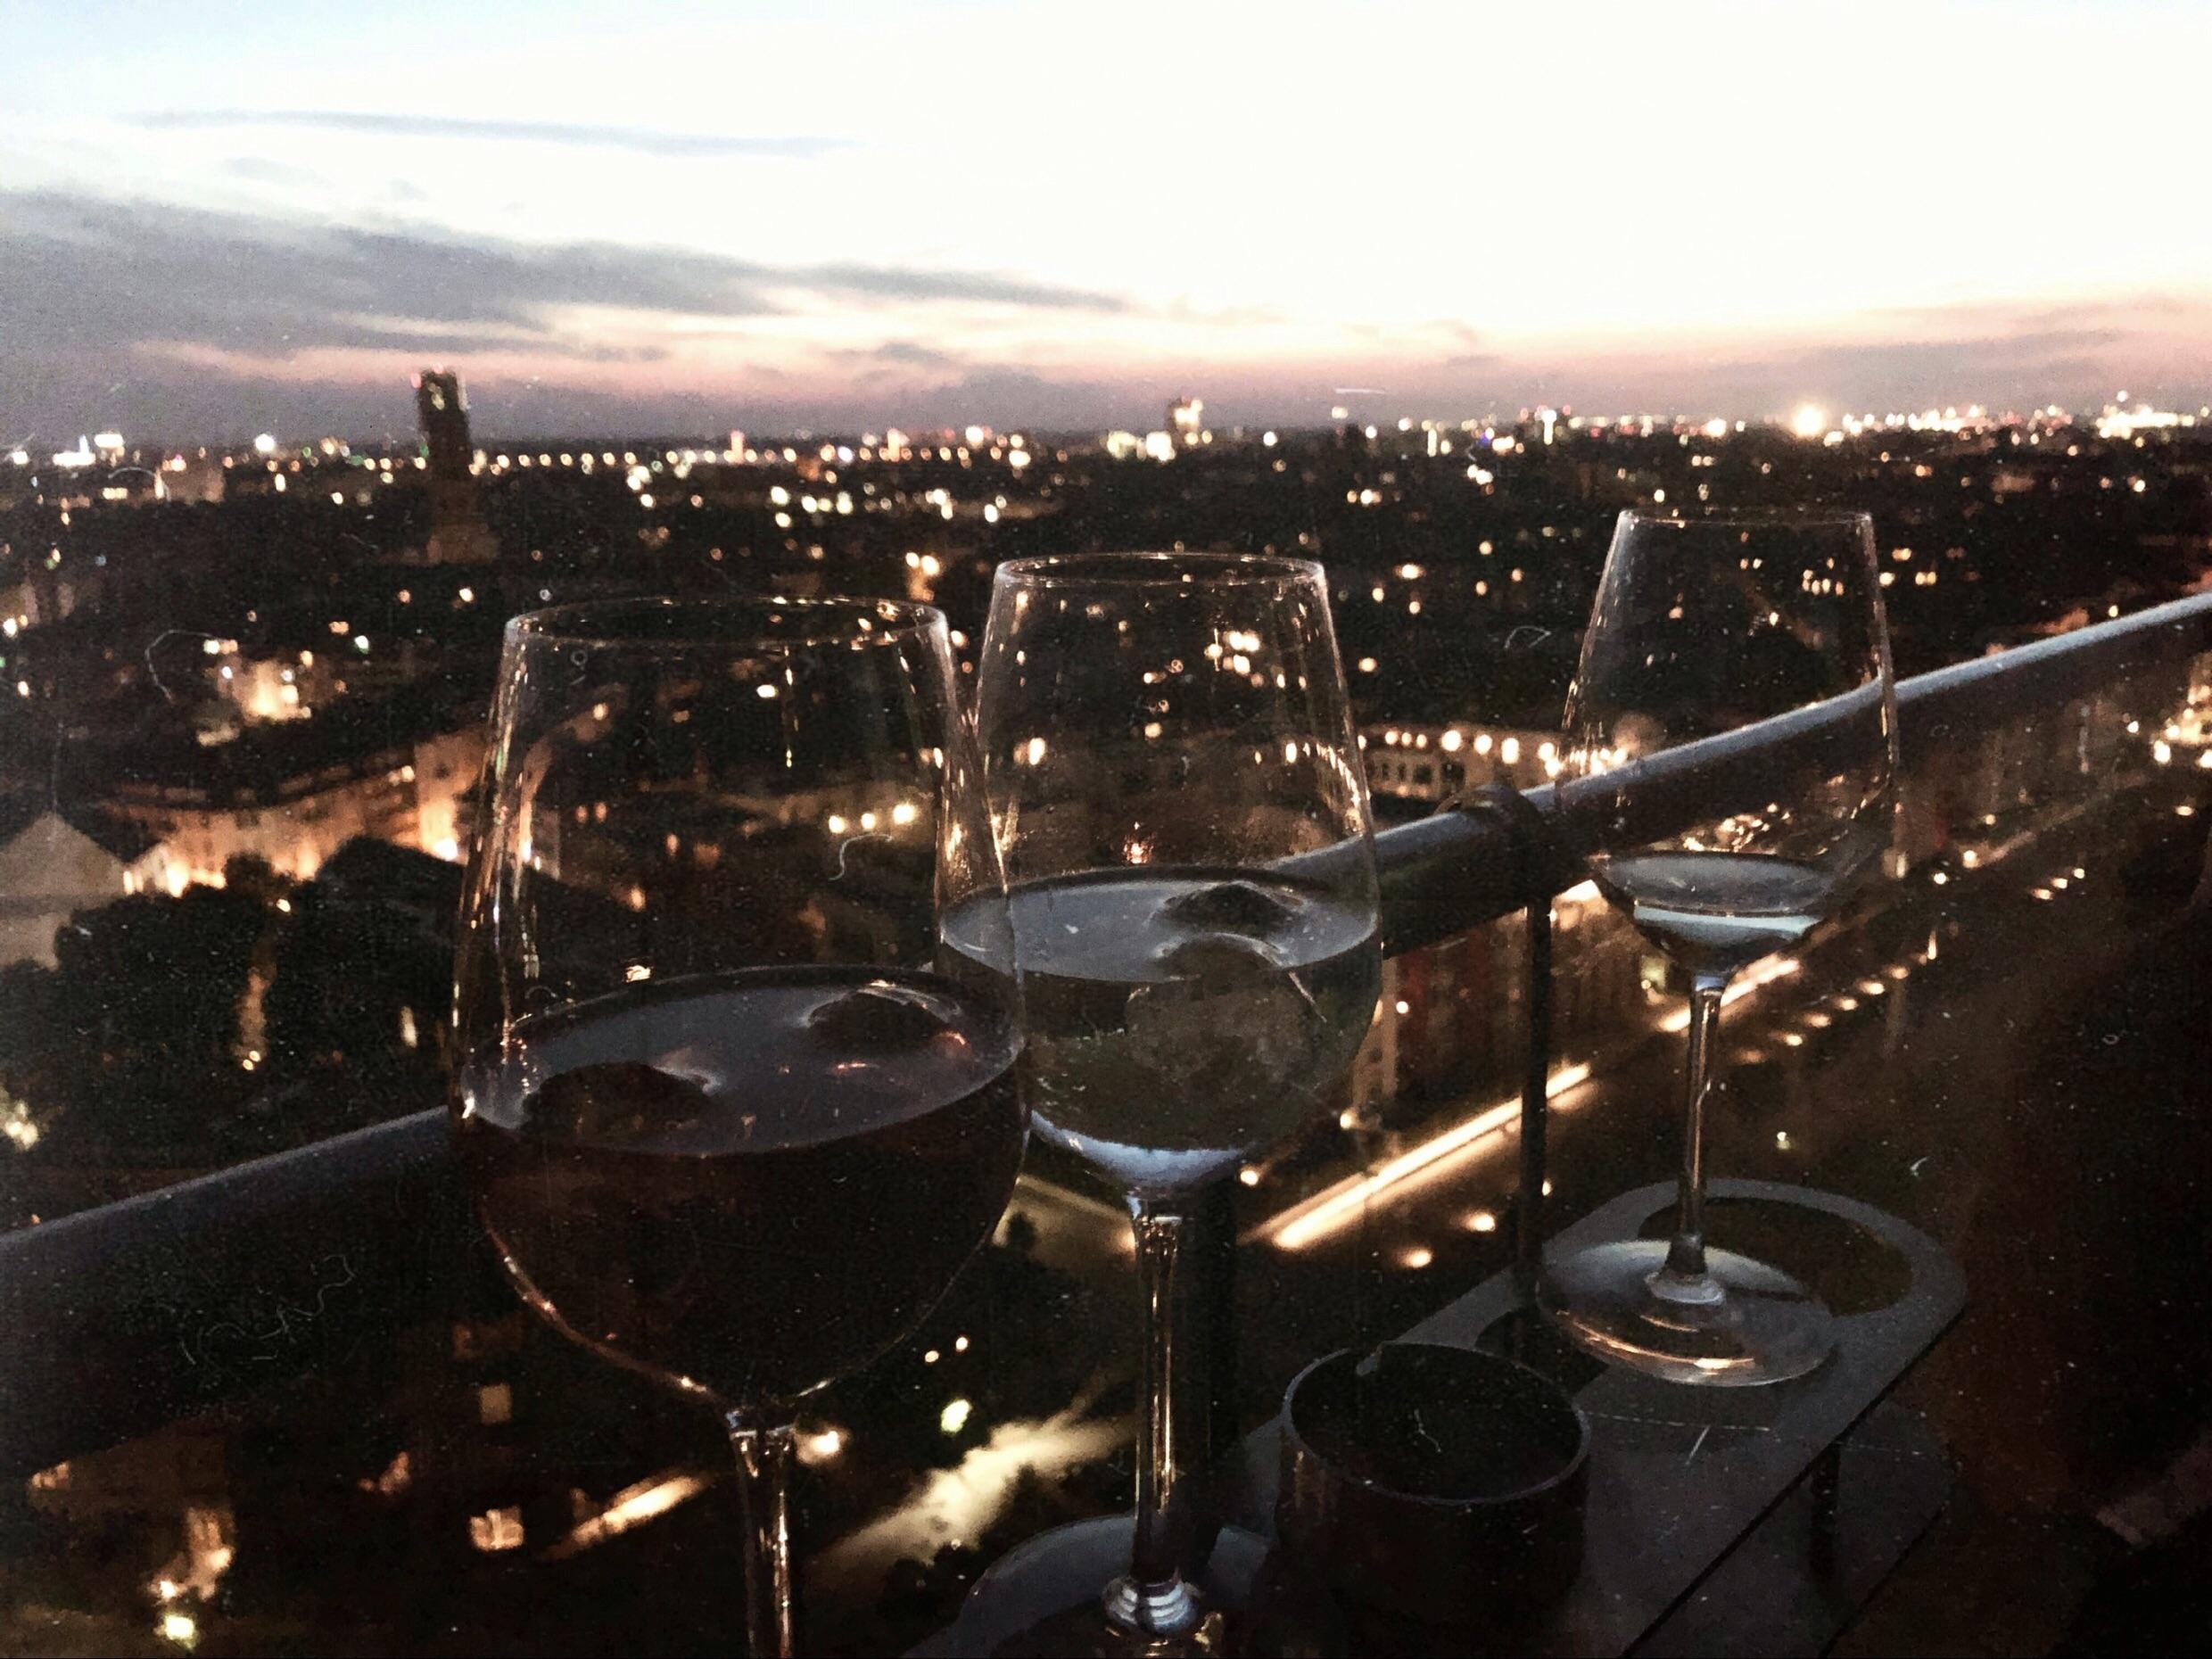 Sommerabende mit Freunden
#25hours #duesseldorf #vino #sunset